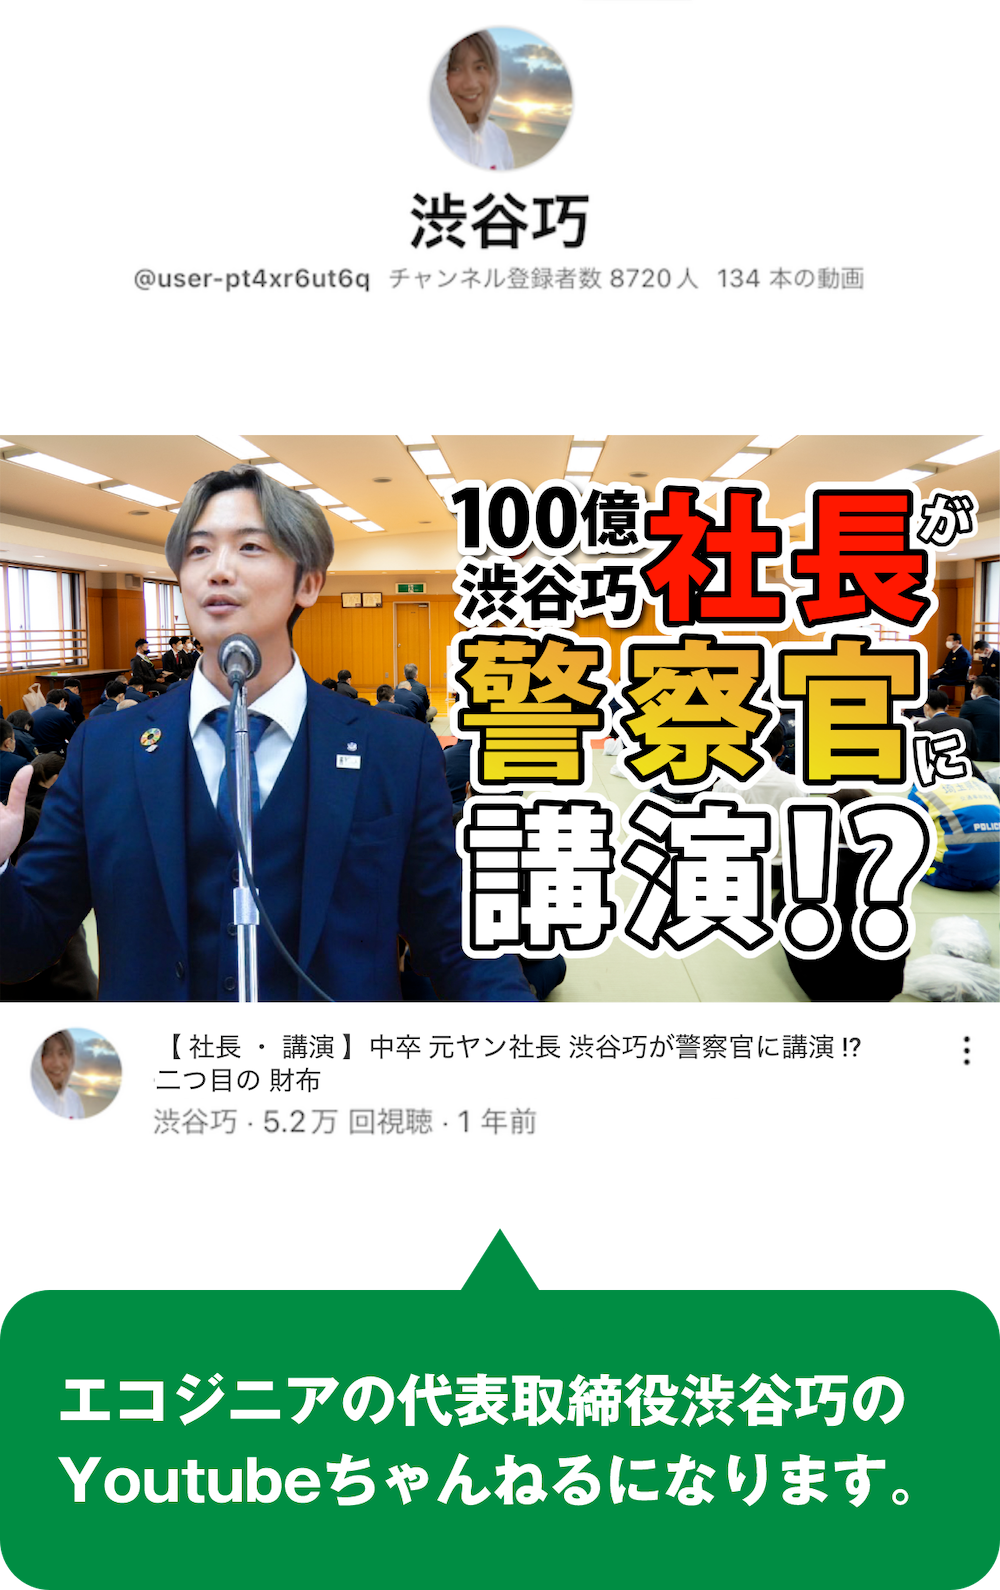 渋谷巧 Youtubeチャンネル